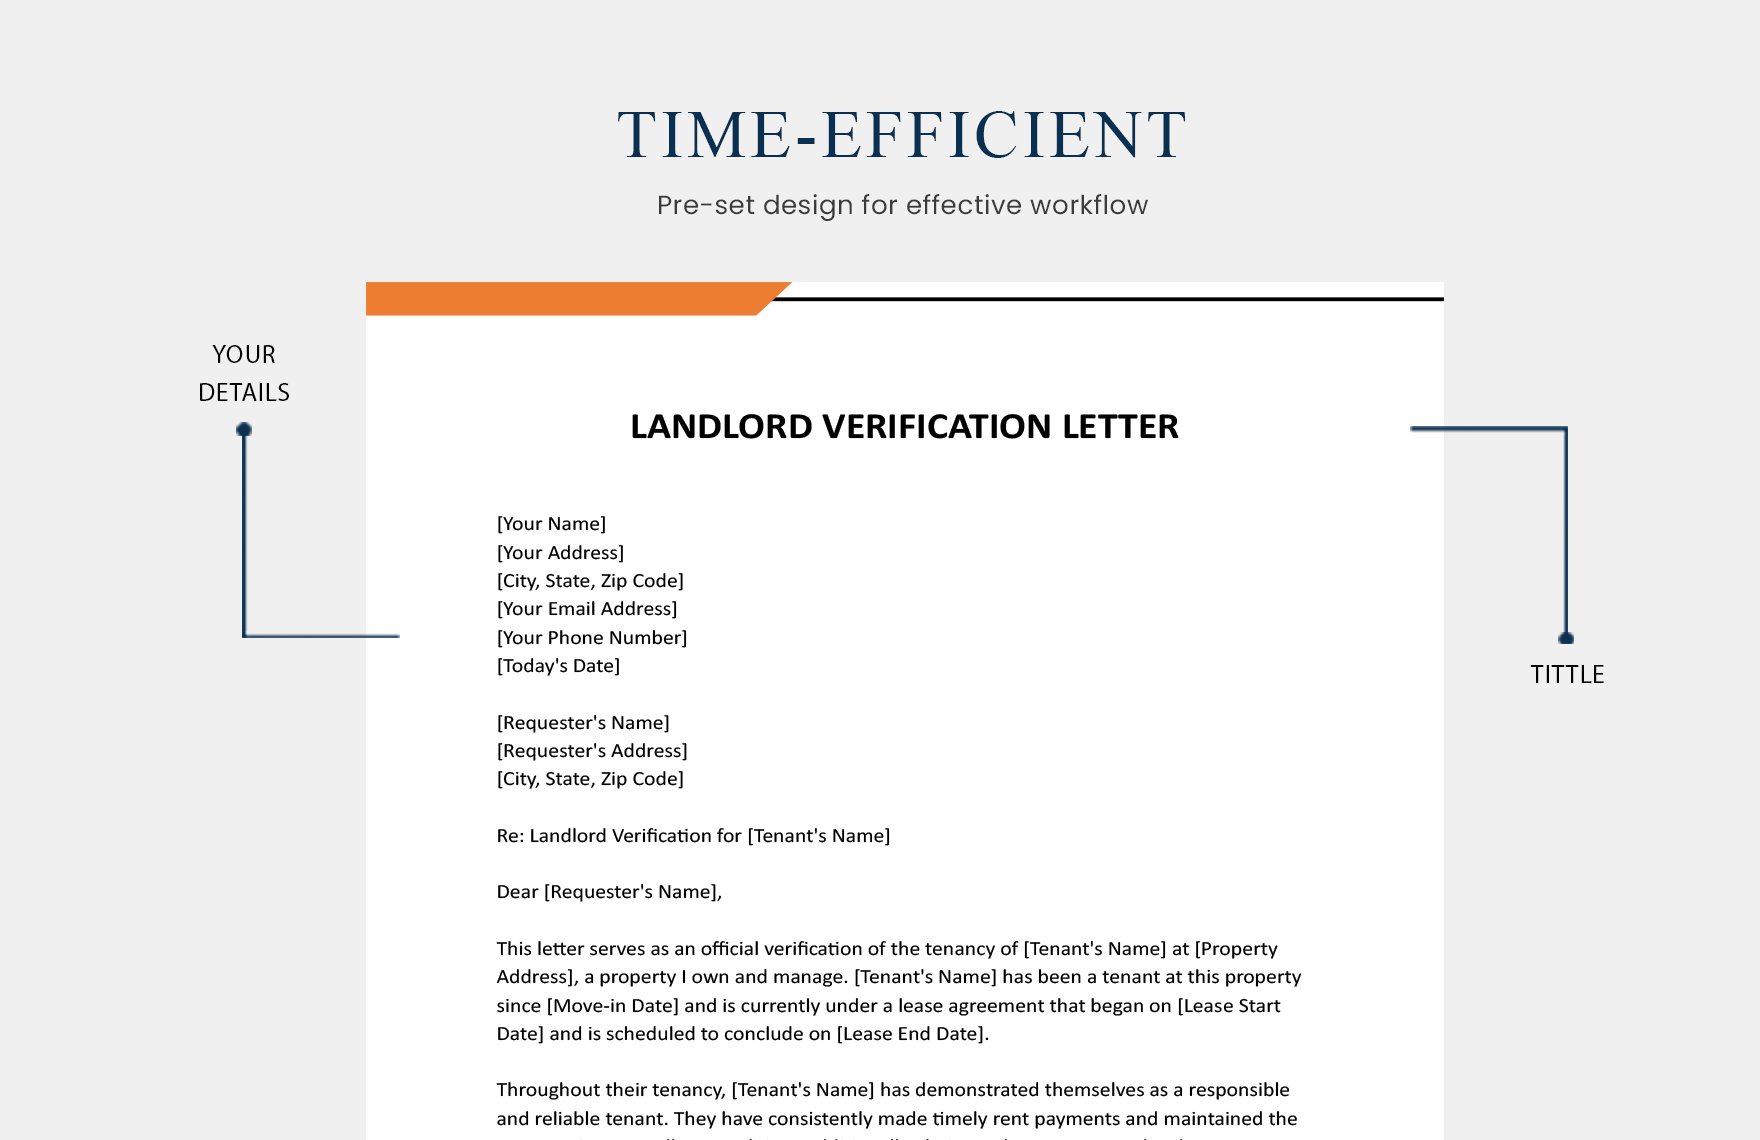 Landlord Verification Letter